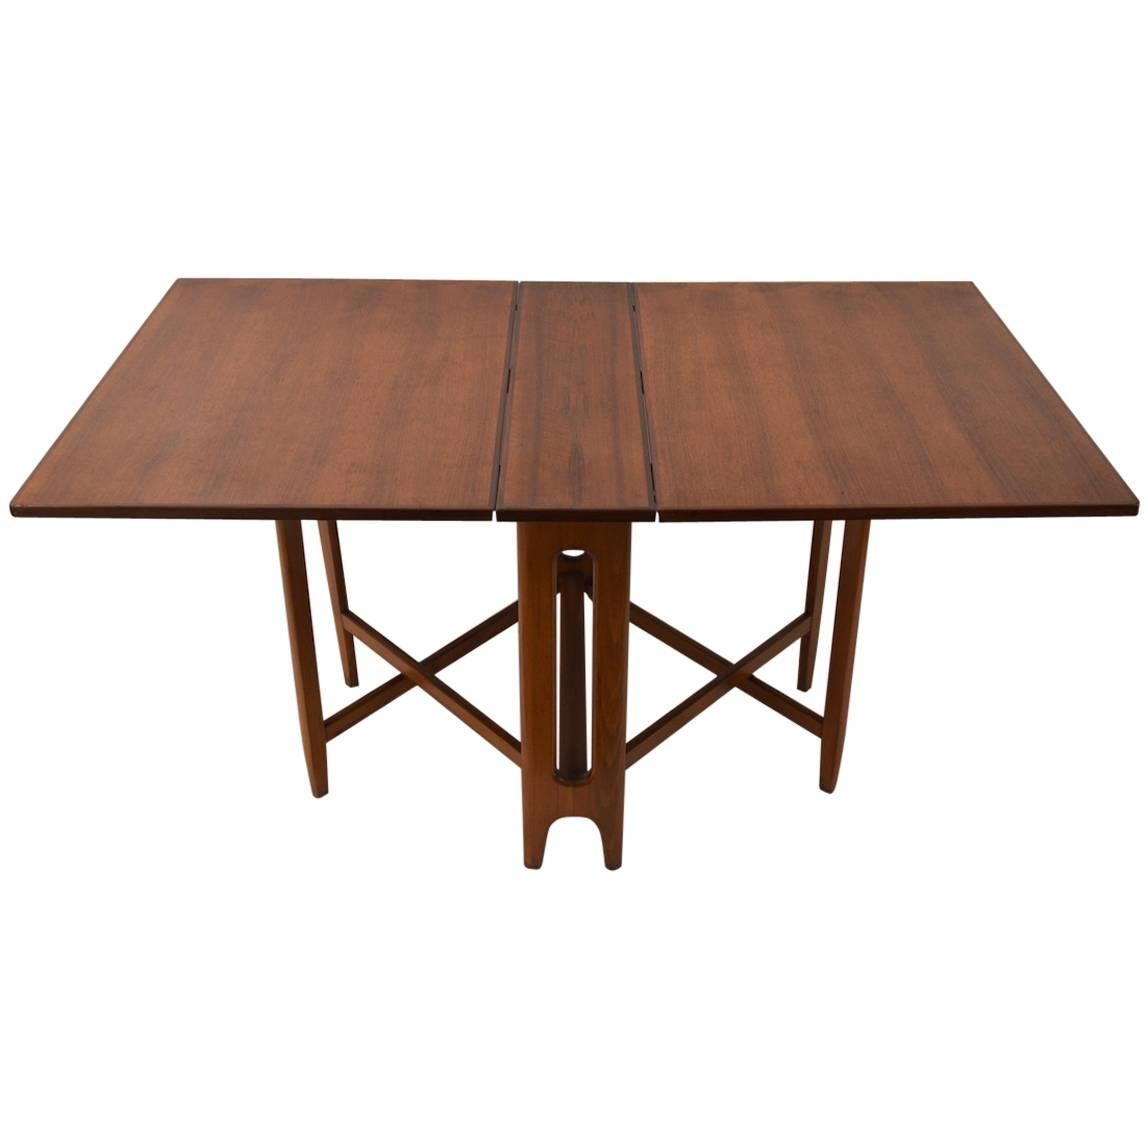 Bruno Mathsson Style Drop-Leaf Table